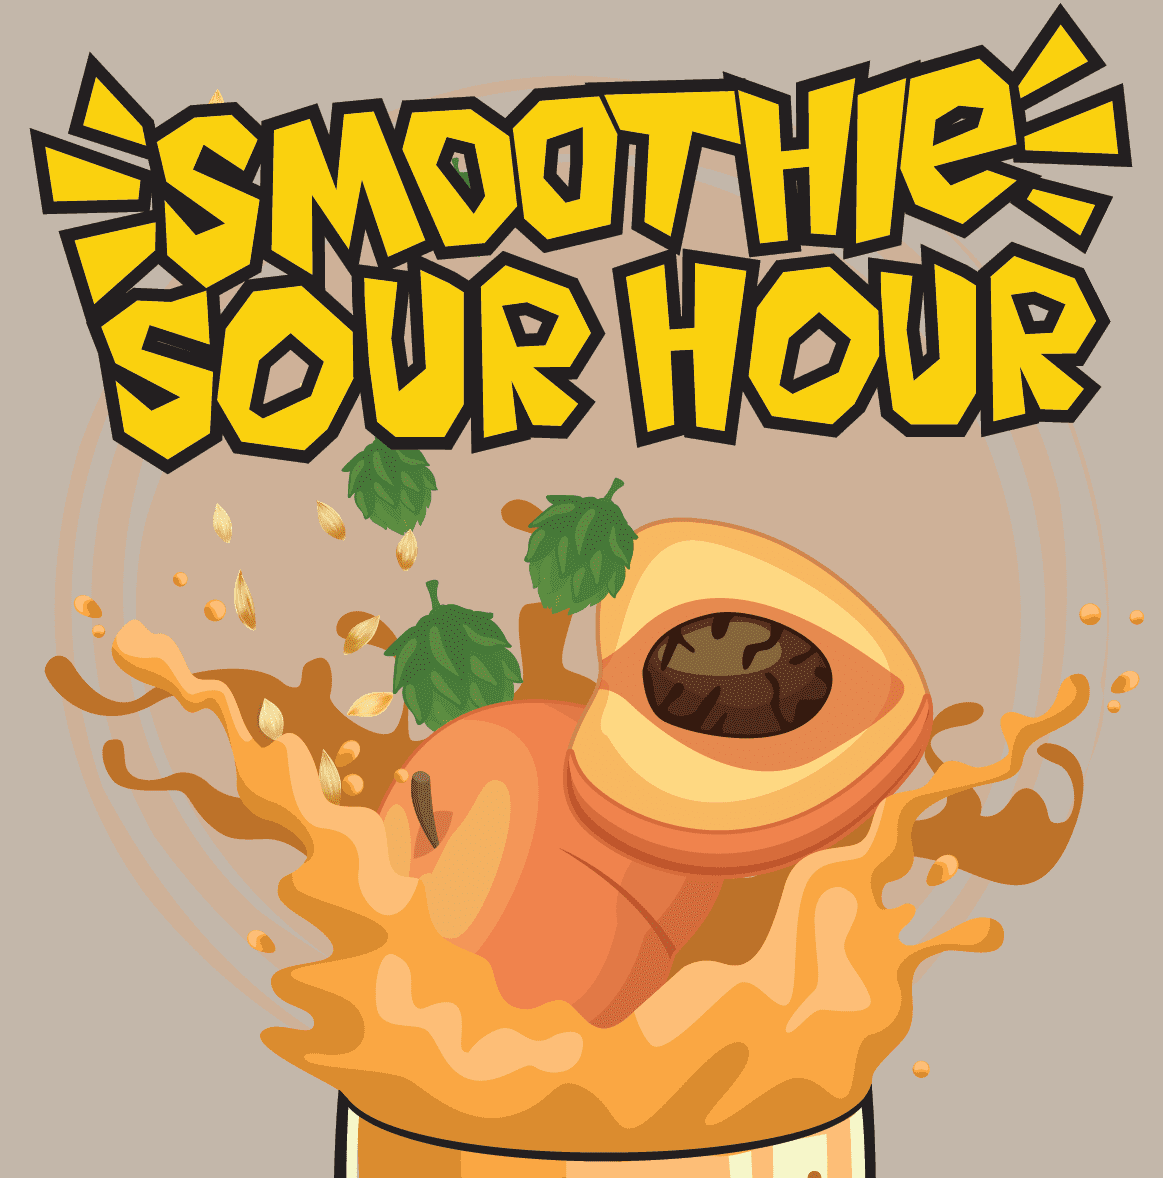 Smoothie Sour Hour cover art